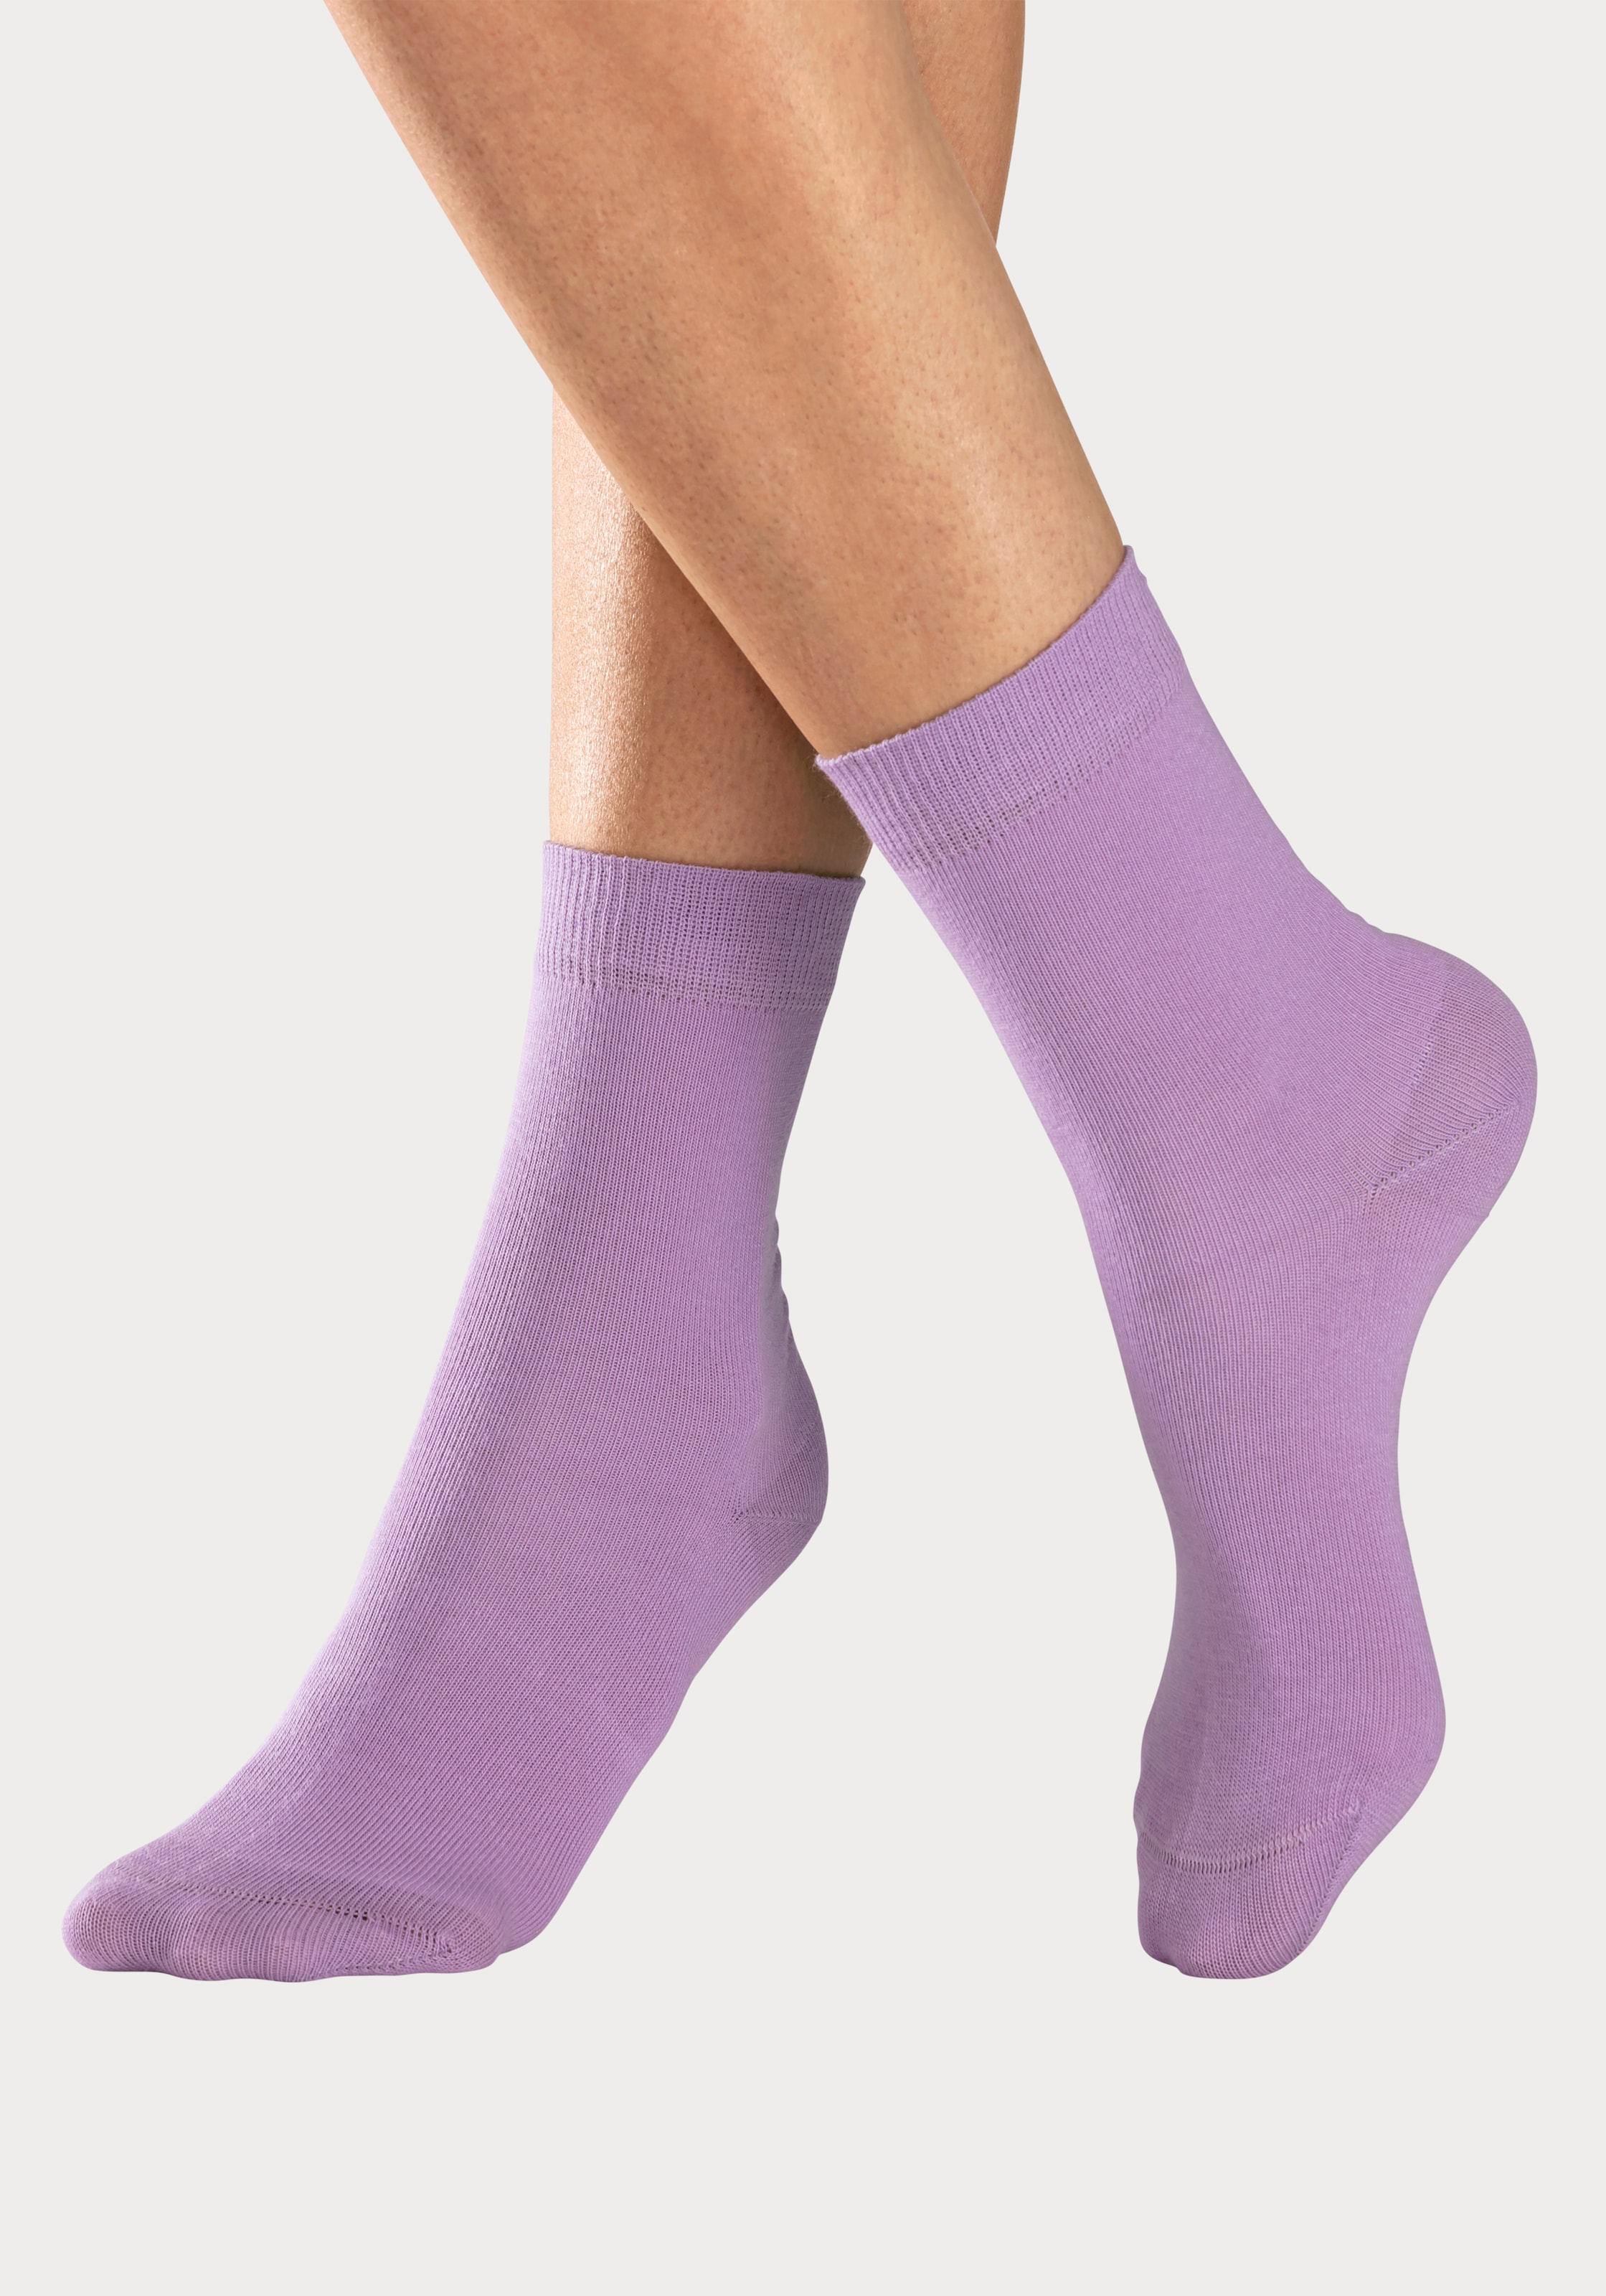 H.I.S Socken, (4 Paar), in unterschiedlichen Farbzusammenstellungen bei ♕